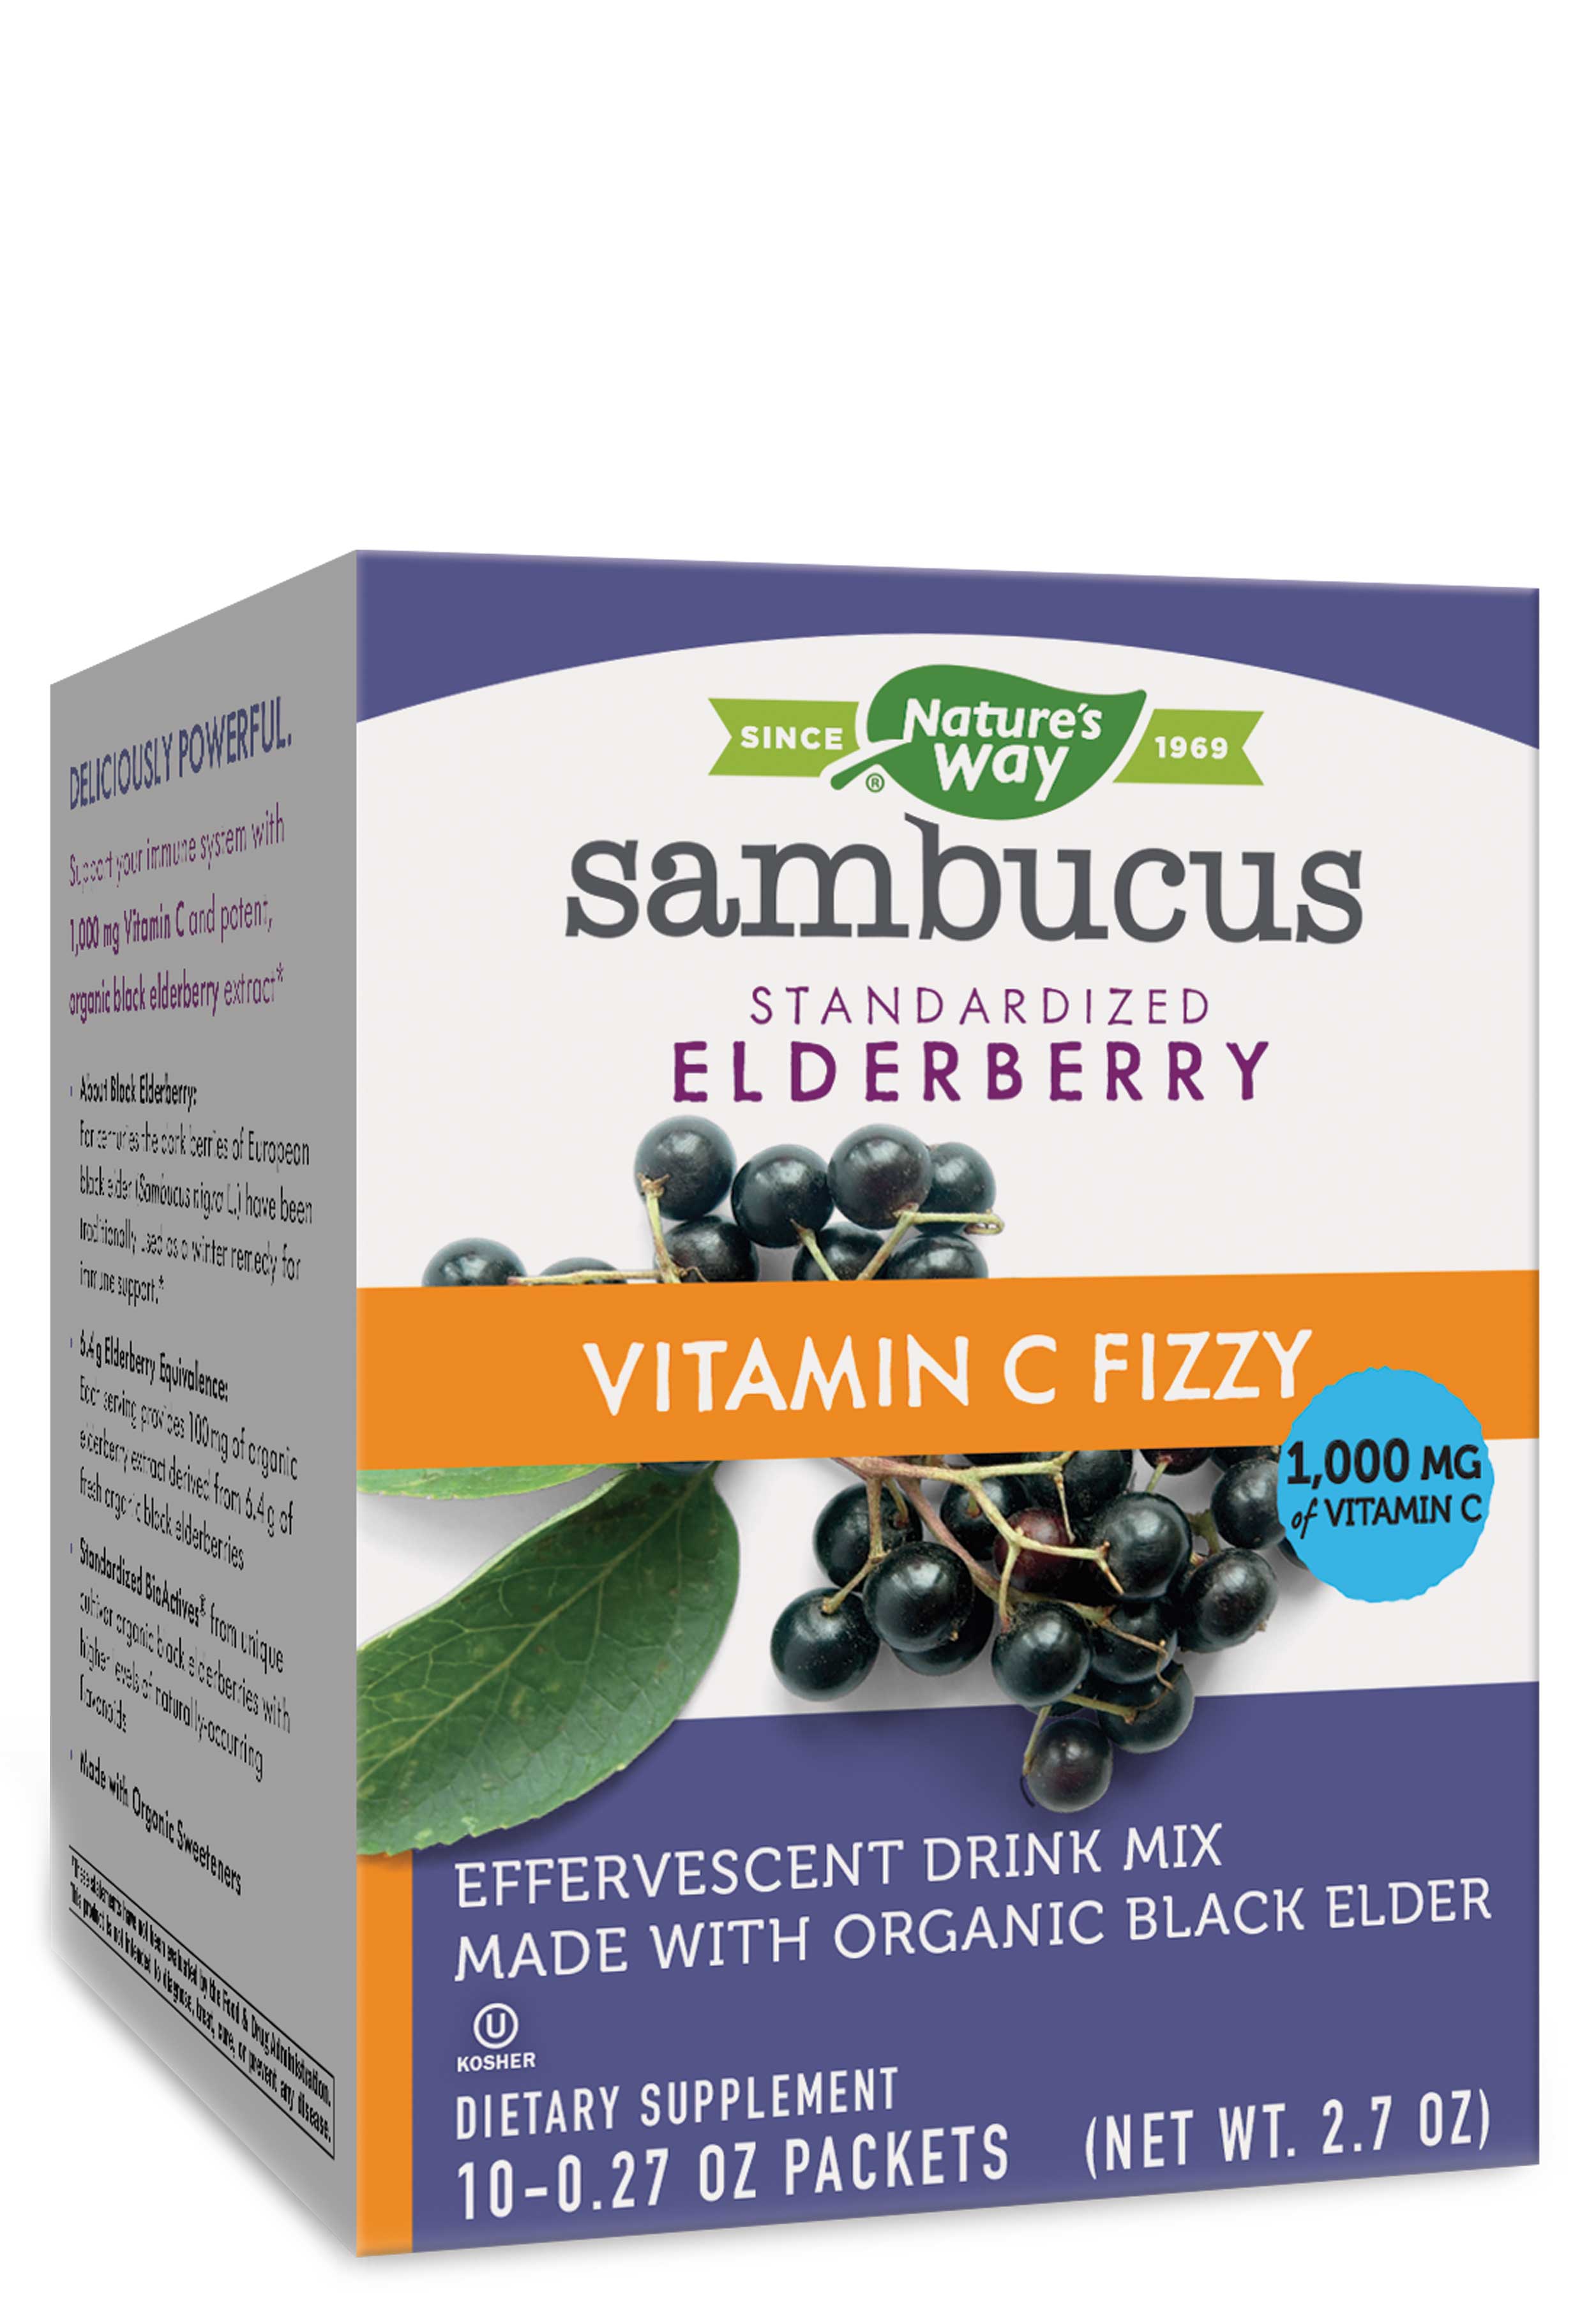 Nature's Way Sambucus Vitamin C Fizzy